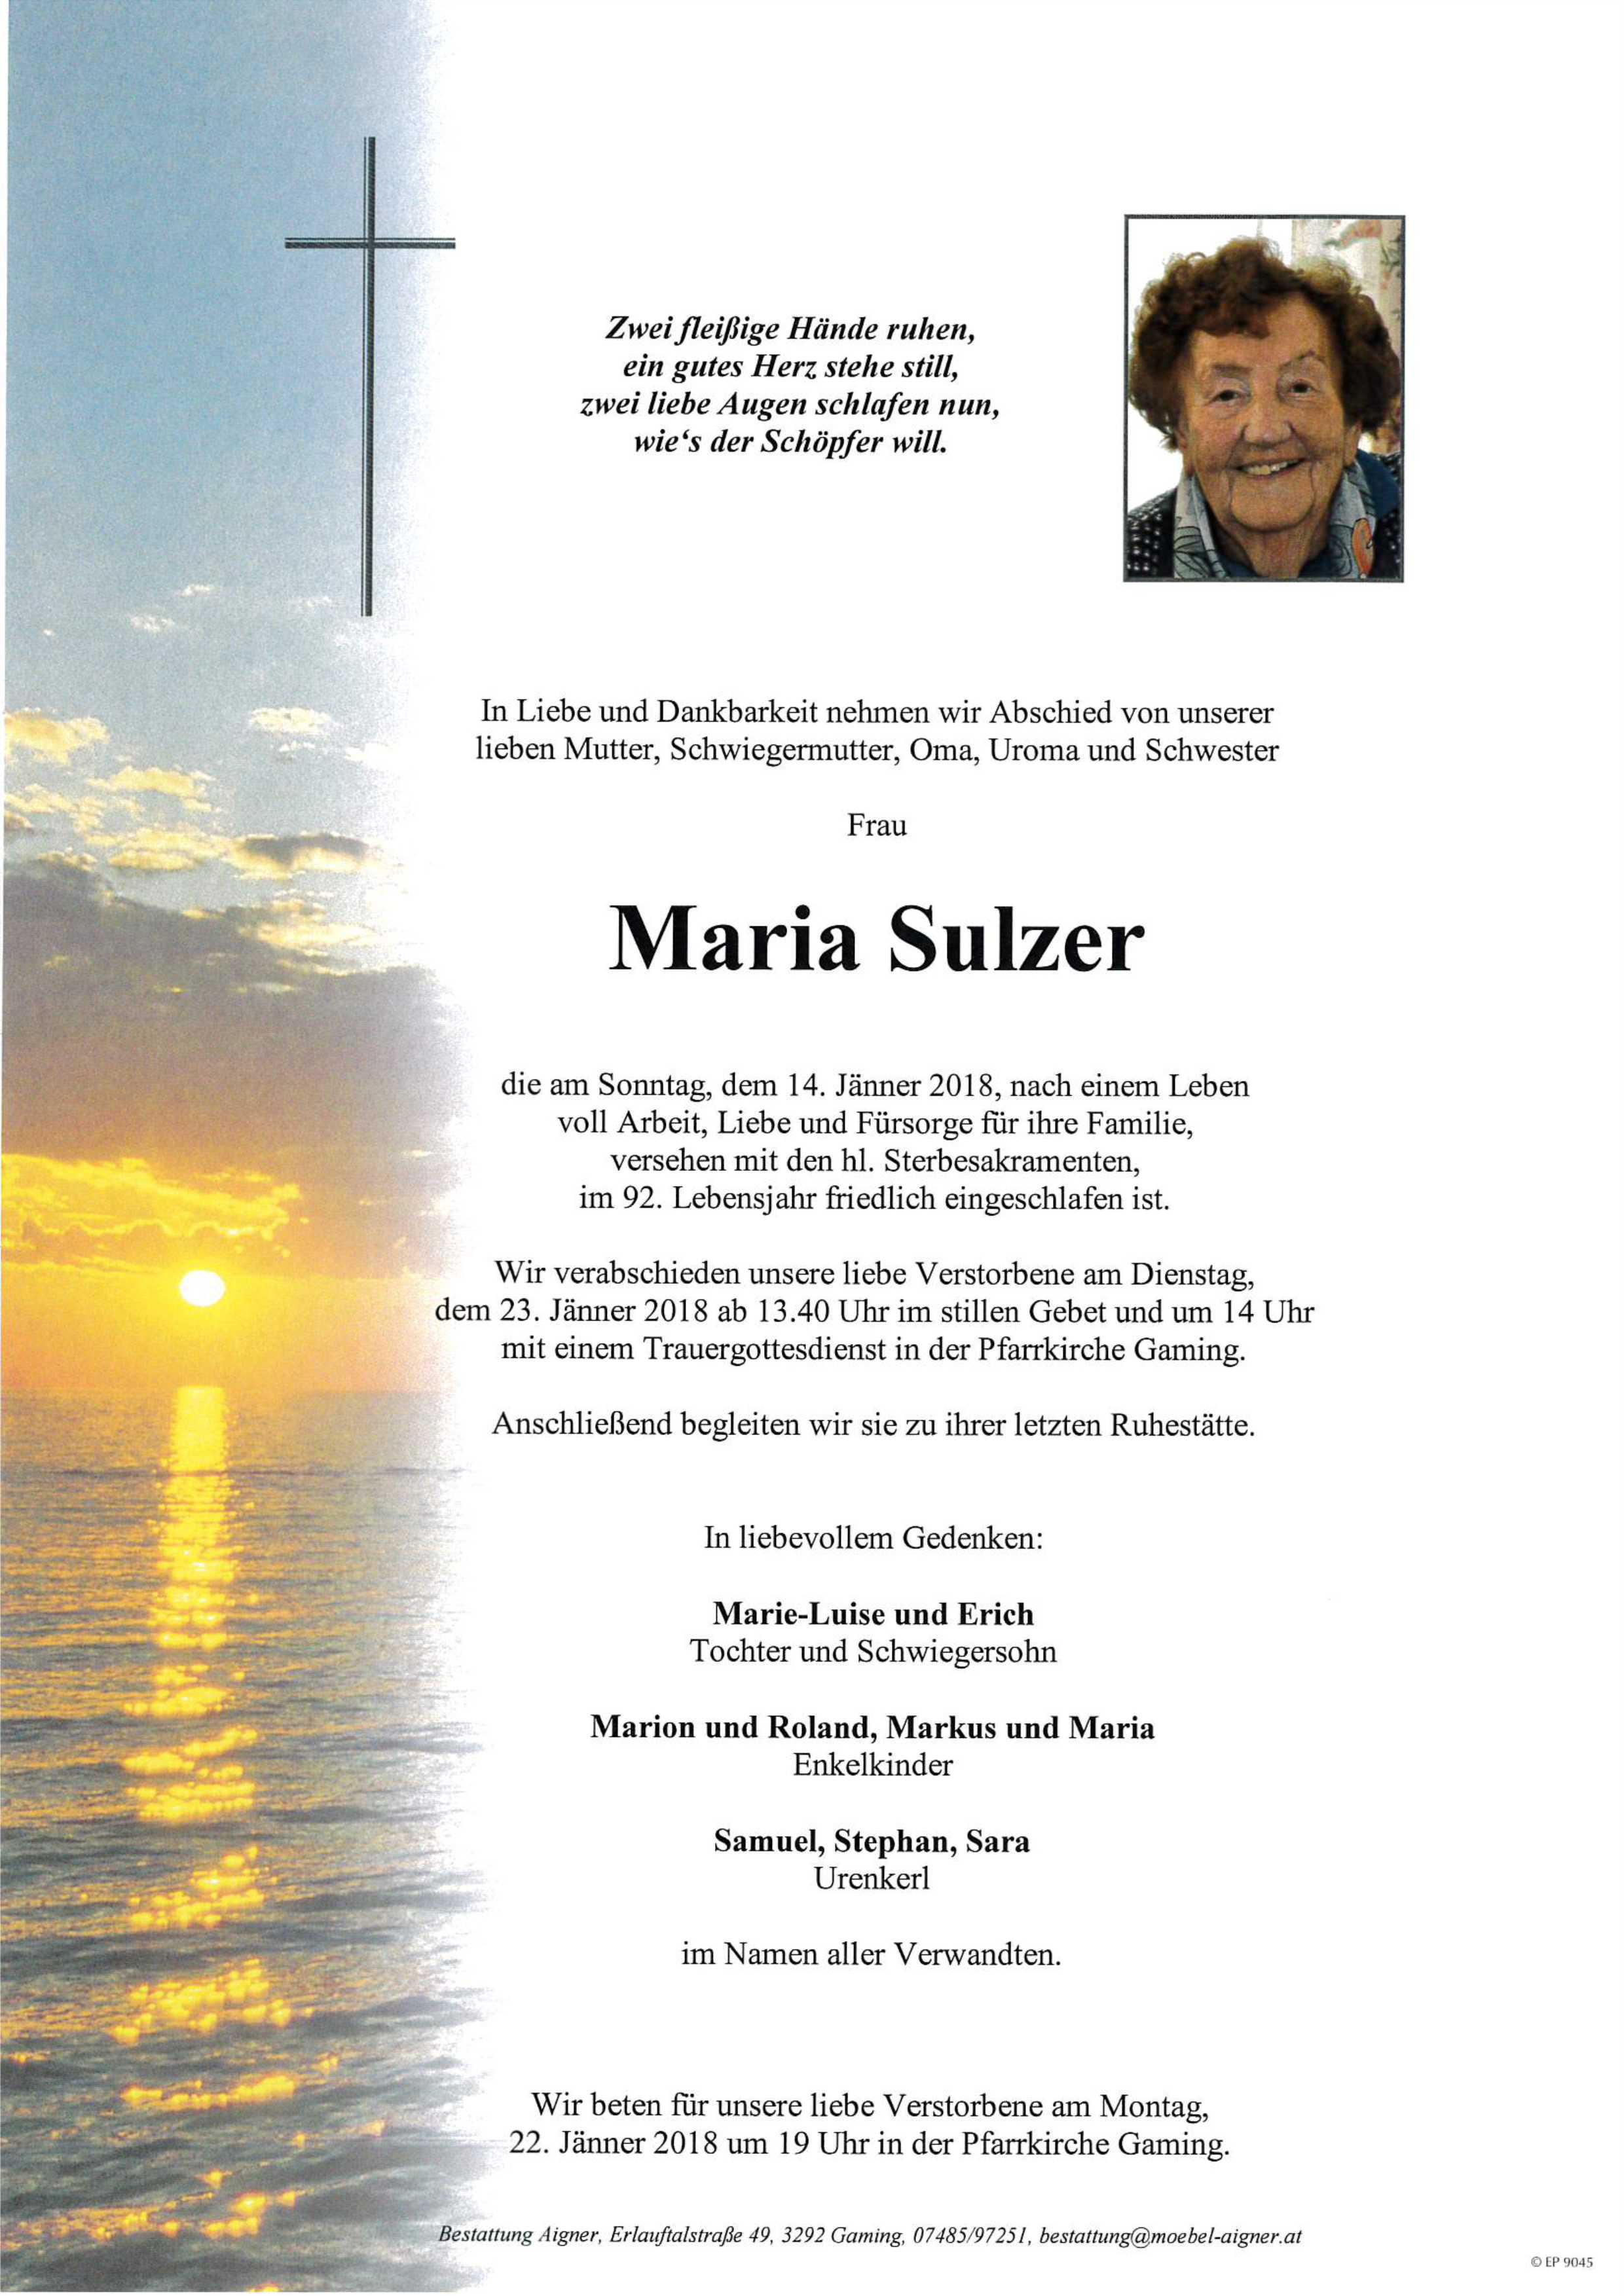 Maria Sulzer